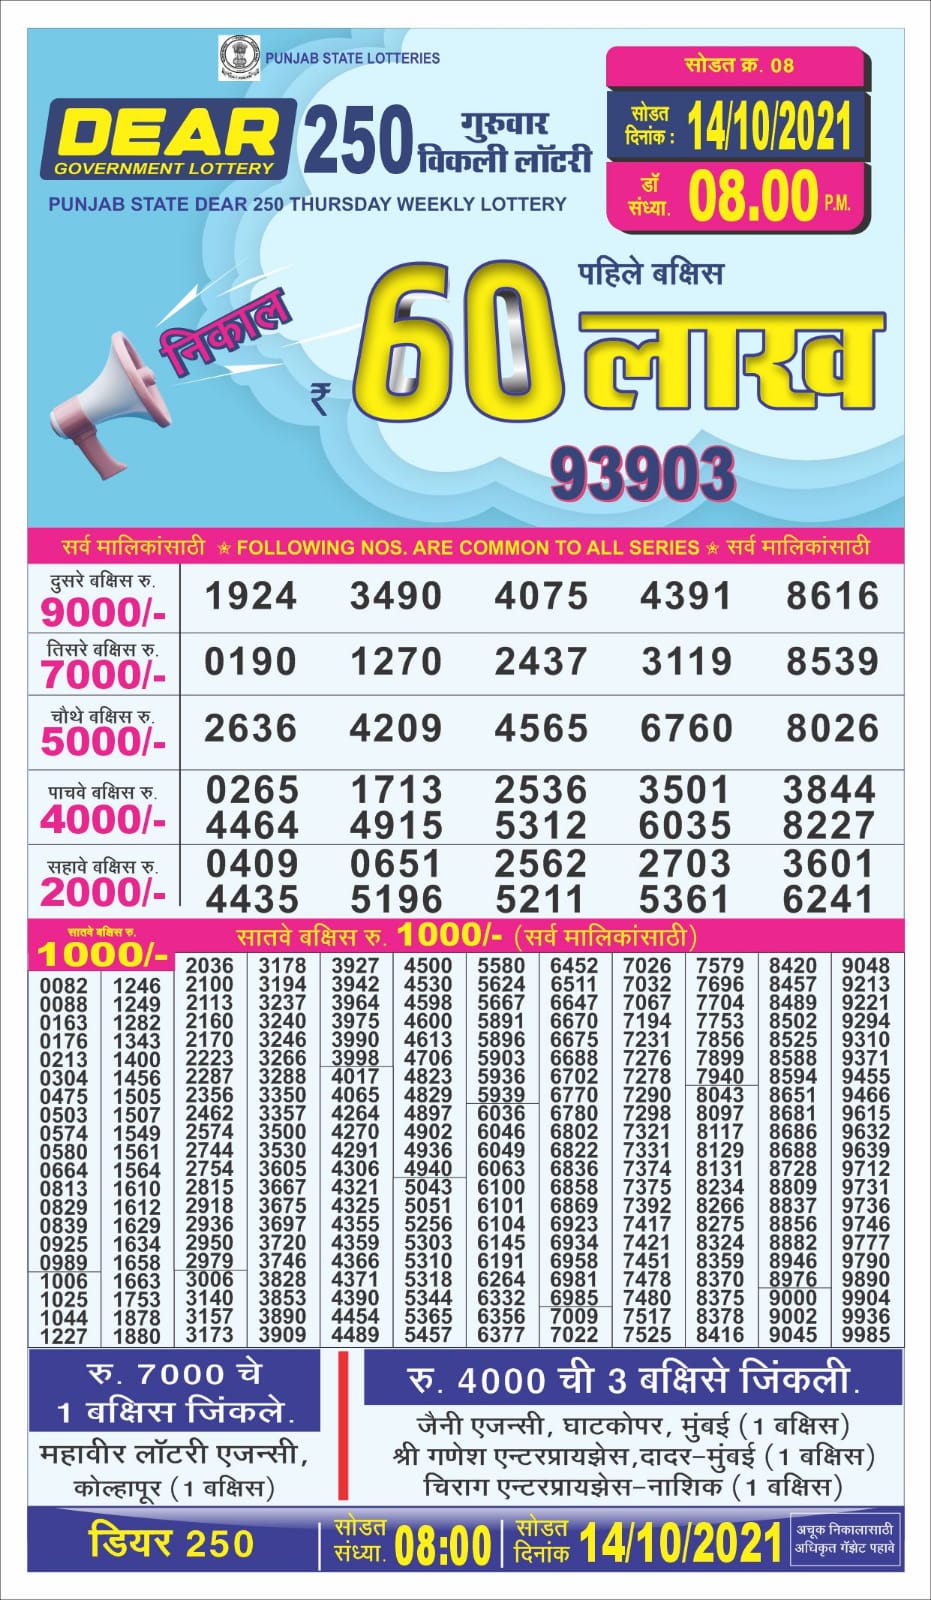 Dear 250 Lottery Result- 14.10.2021